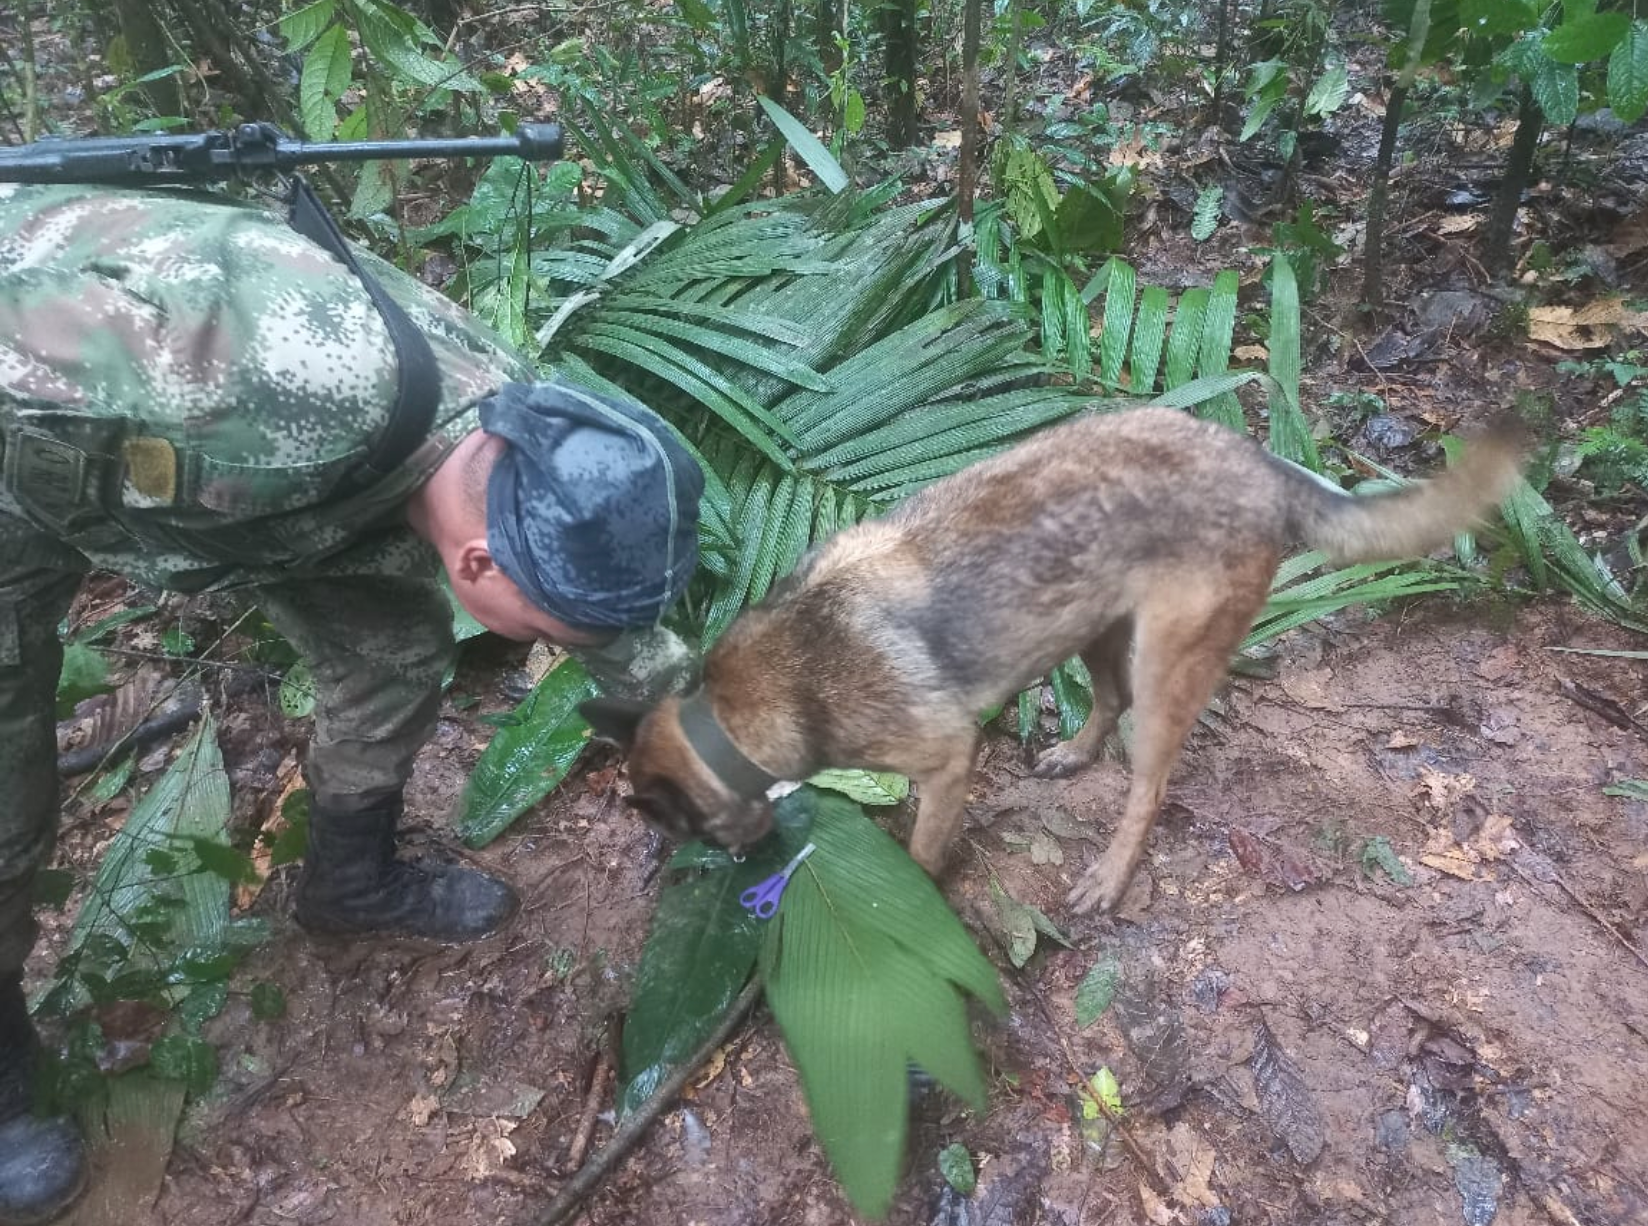 Los esfuerzos por encontrarlos se intensificaron después de que los equipos de rescate, incluidos perros de búsqueda, hallaran fruta desechada que los niños comieron para sobrevivir y refugios improvisados con vegetación de la selva